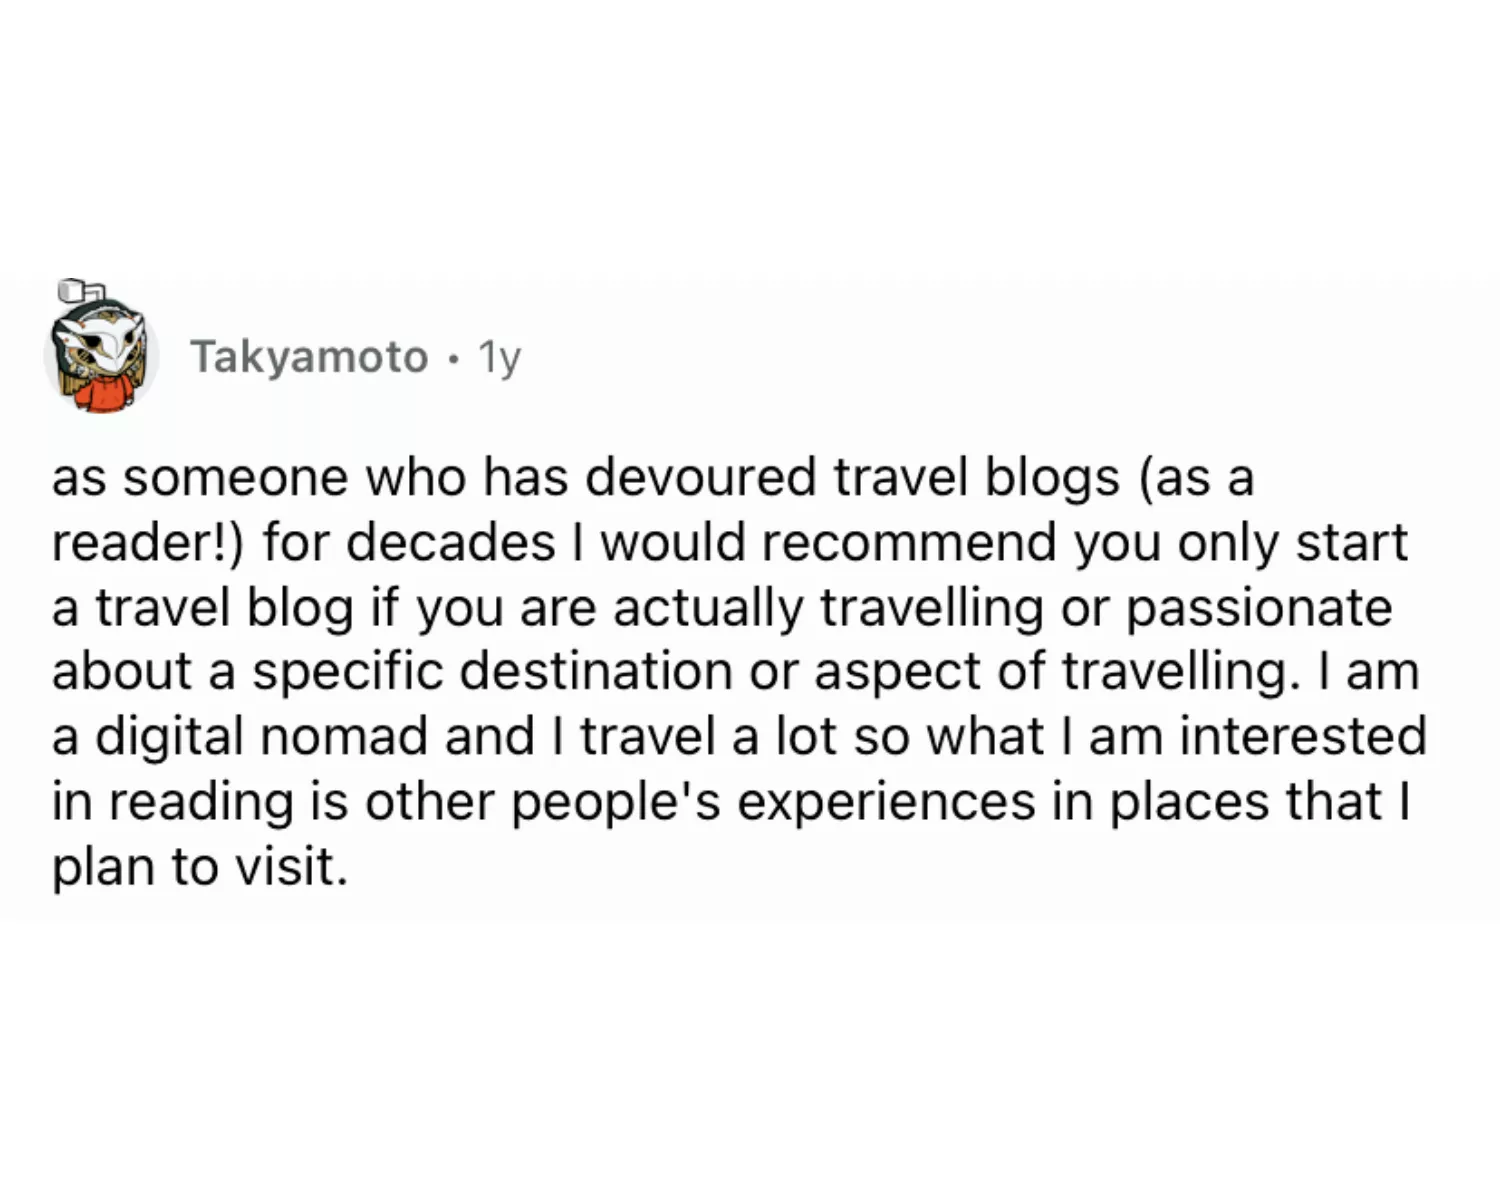 A Reddit comment on travel blogging.